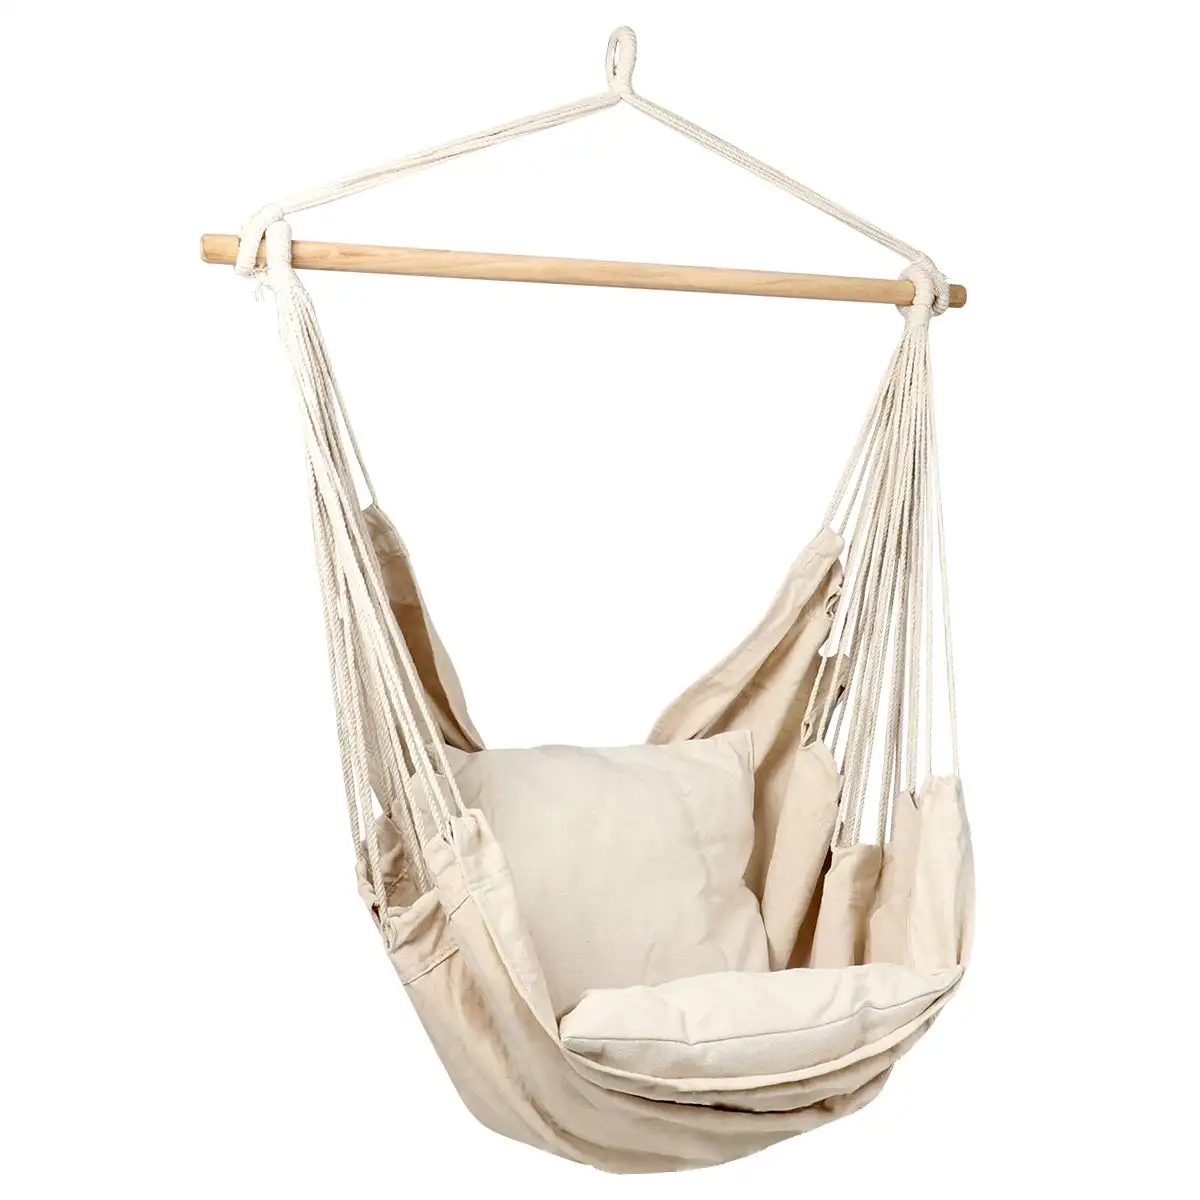 Portable extérieur Fine coton tissage hamac chaise suspendu corde plafond balançoire chaise